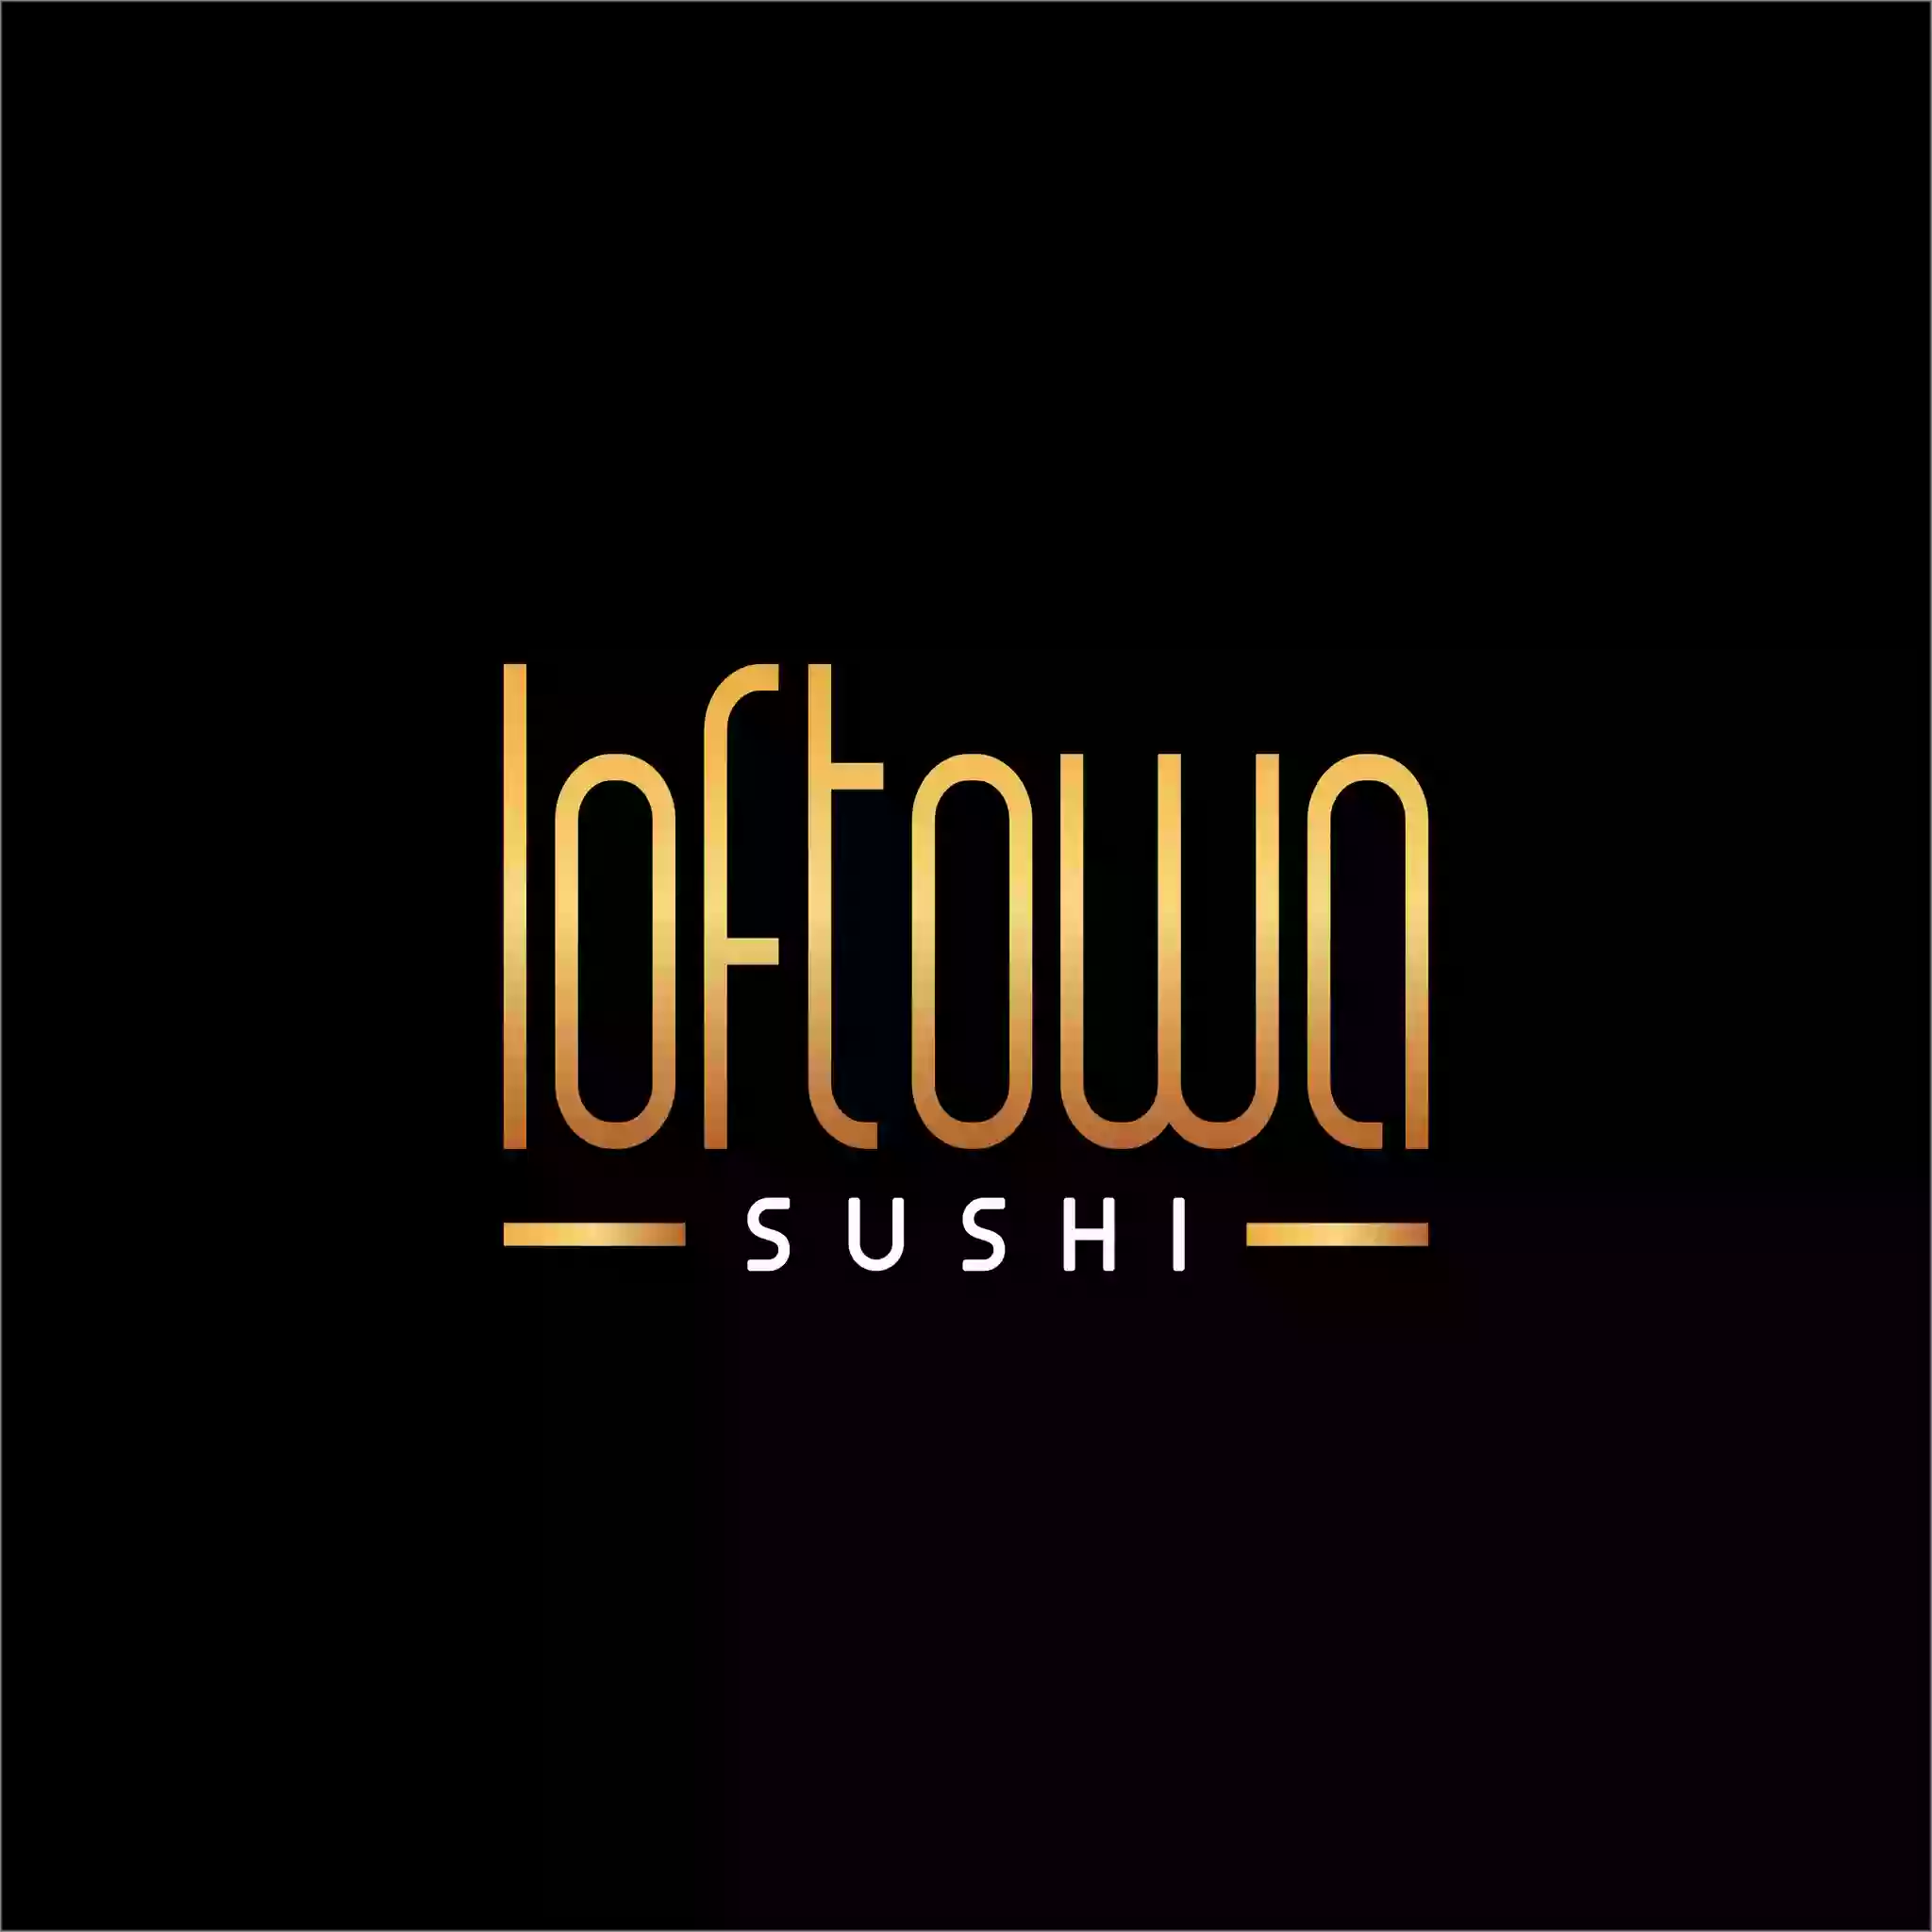 Loftowa sushi